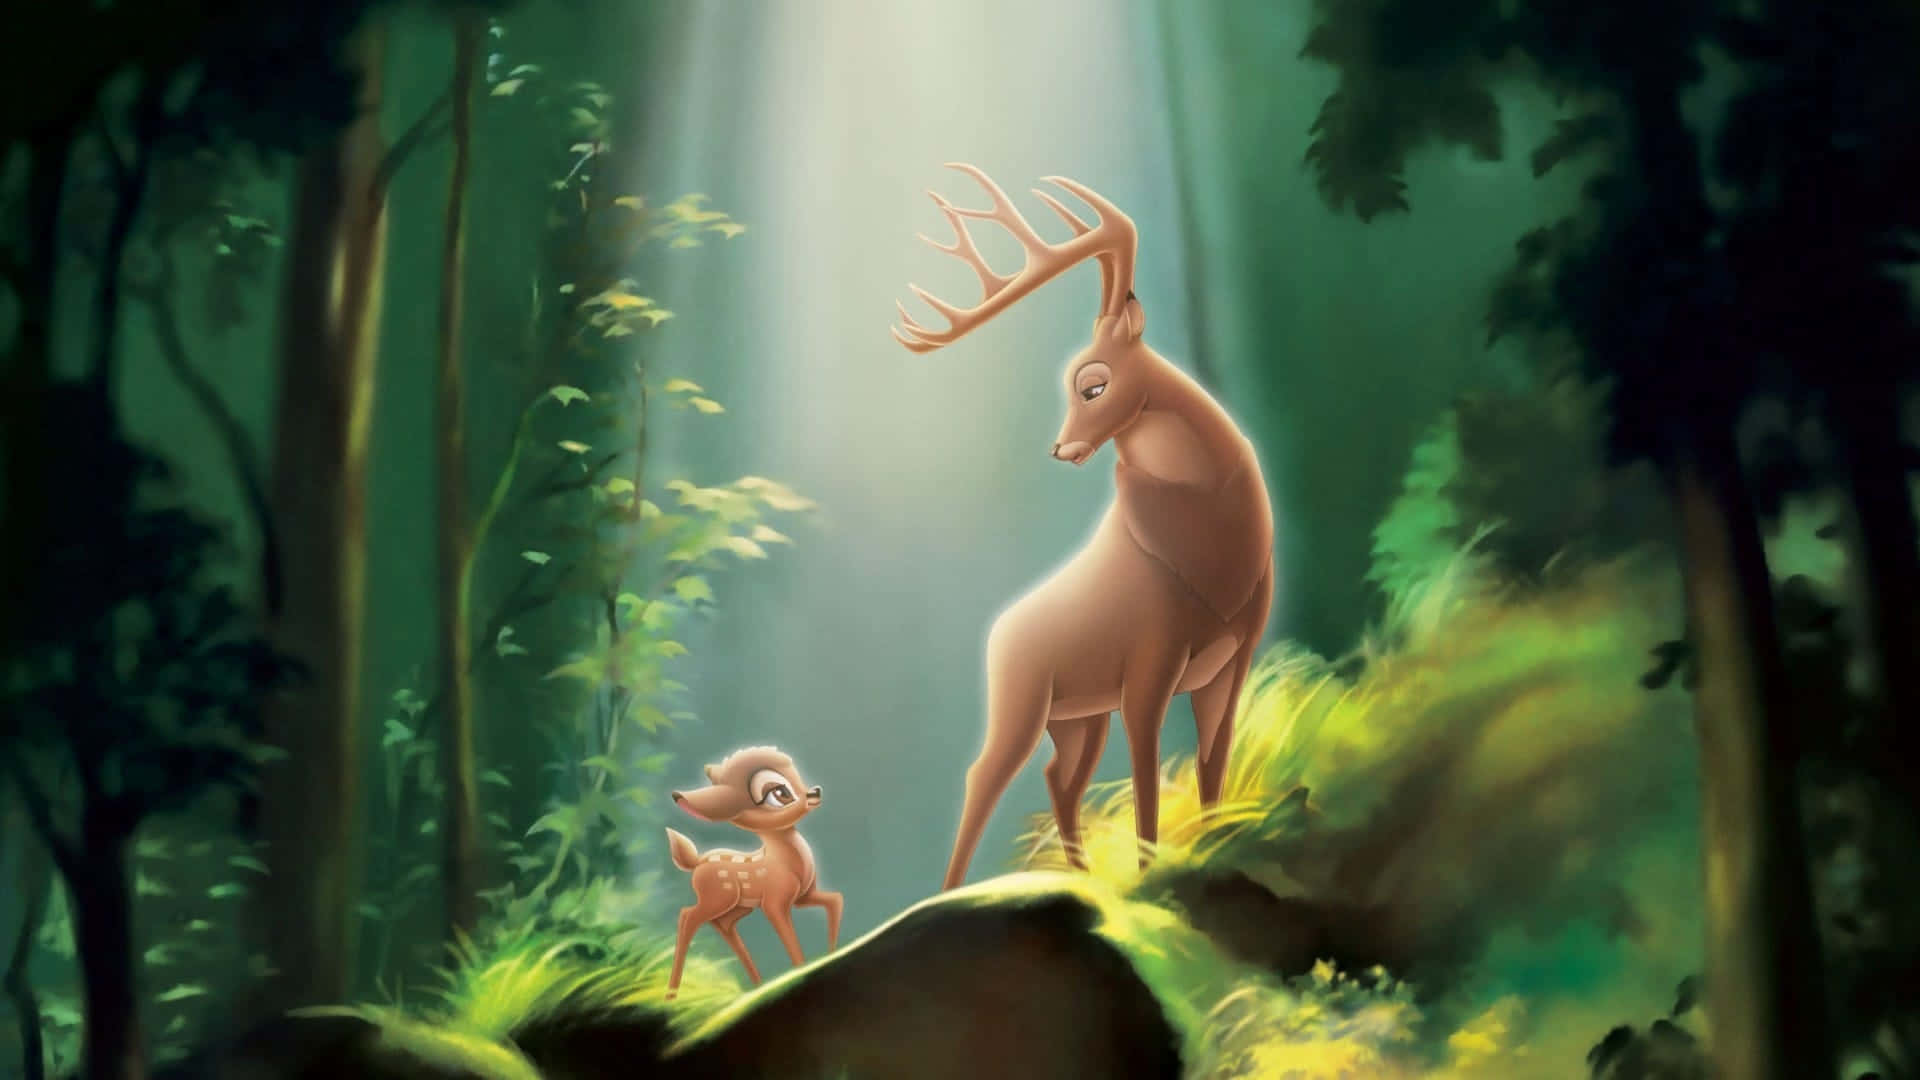 Ensöt Bambi I En Äng, Hälsar Publiken Med Ett Varmt Leende.